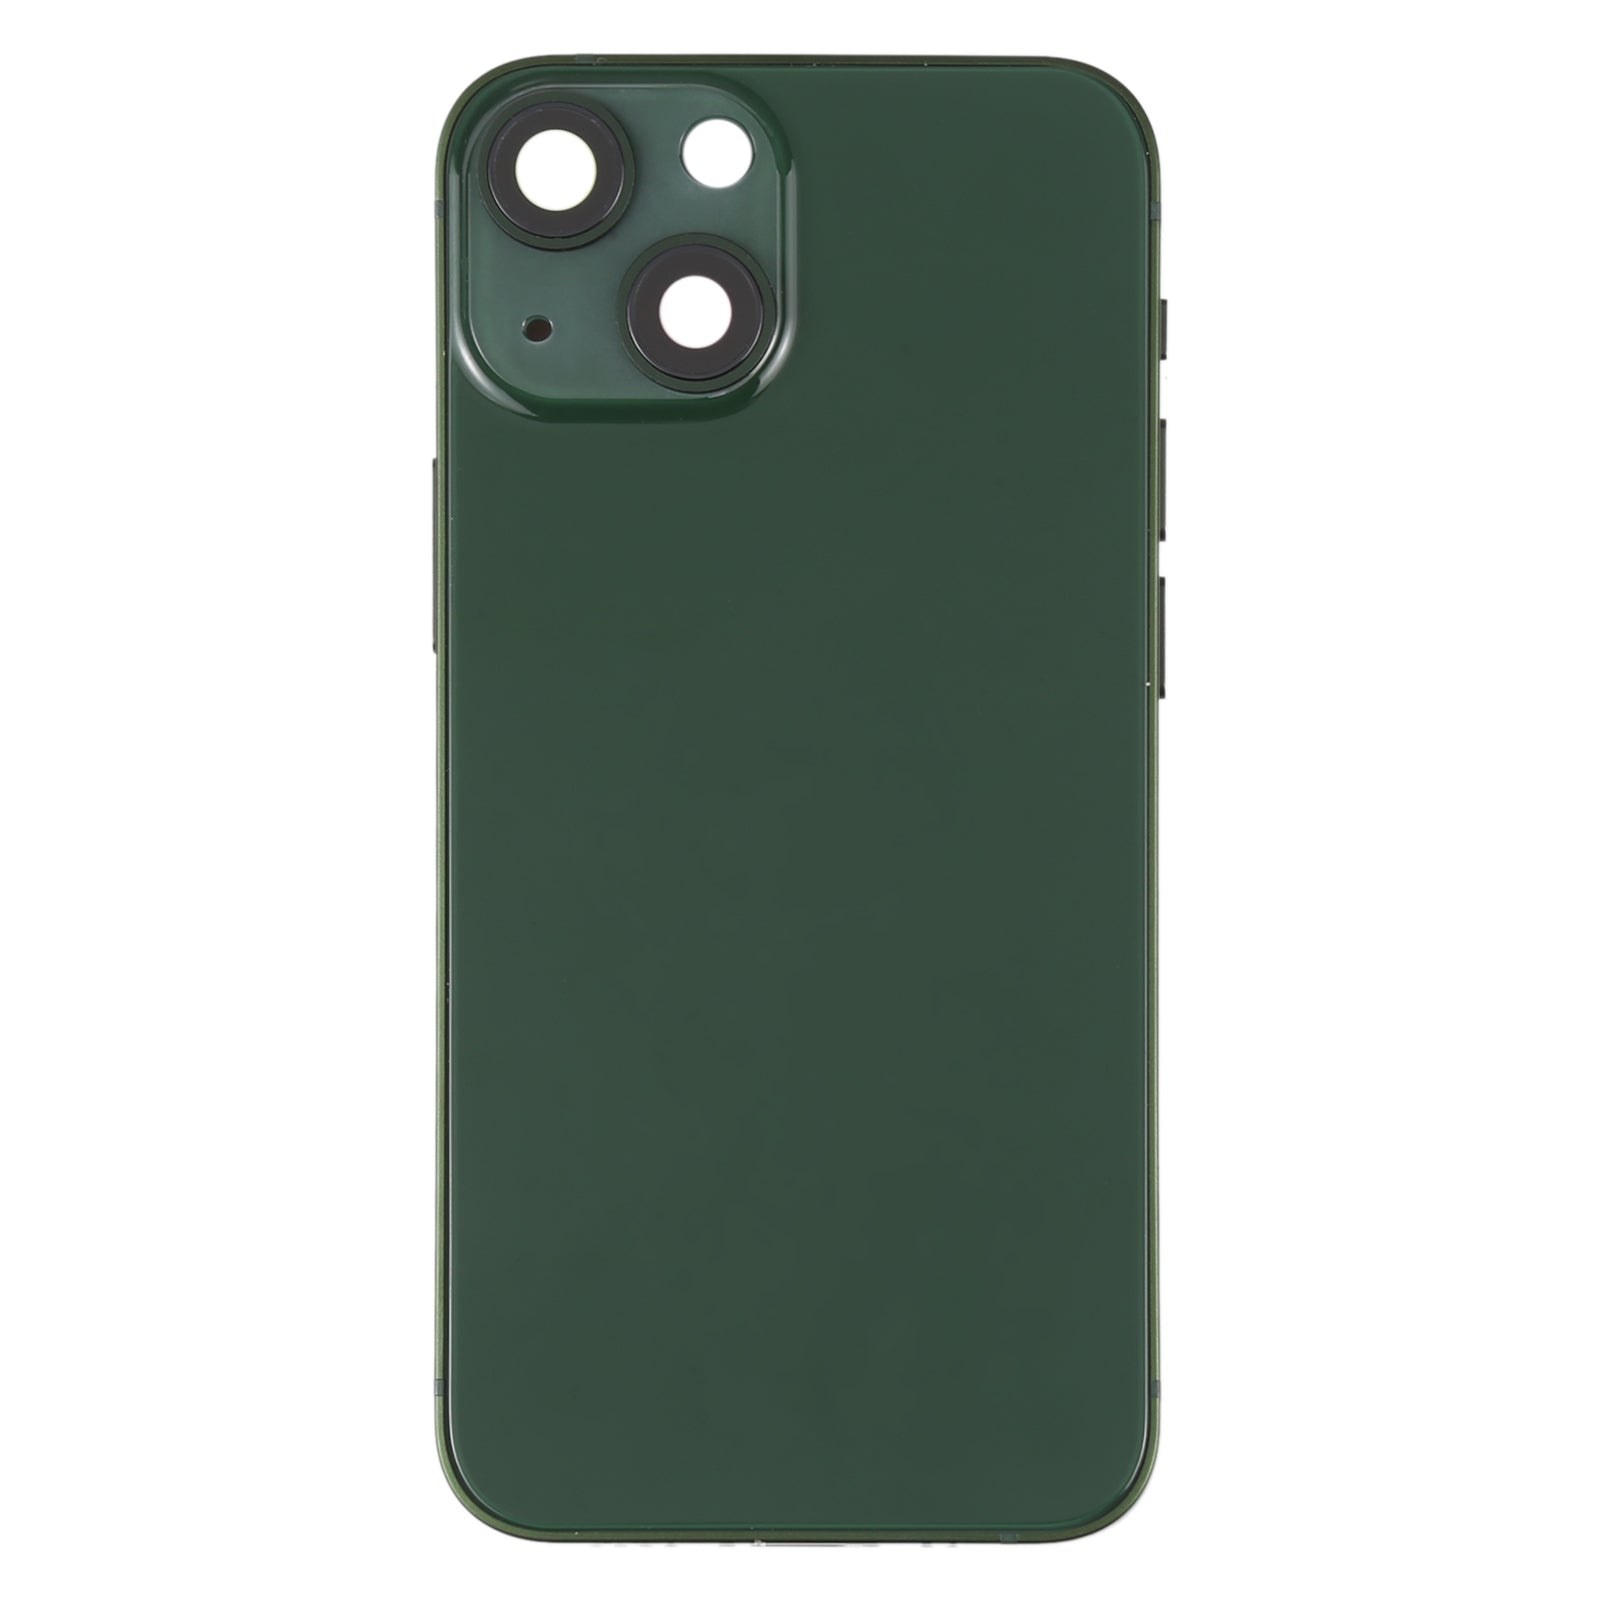 Carcasa Chasis Tapa Bateria Apple iPhone 13 Mini Verde